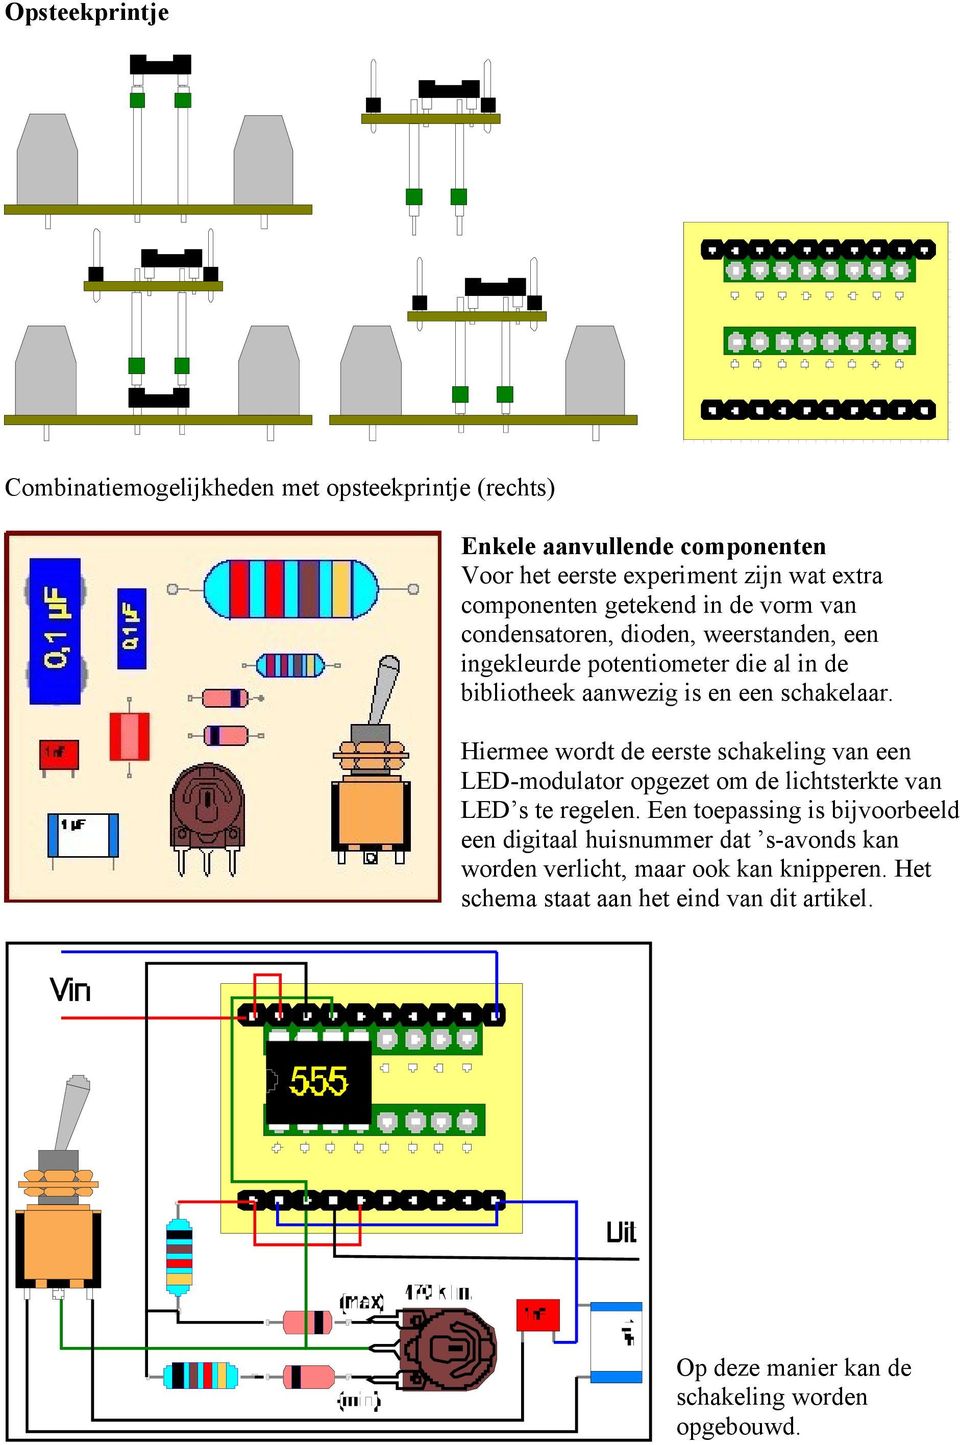 Hiermee wordt de eerste schakeling van een LED-modulator opgezet om de lichtsterkte van LED s te regelen.